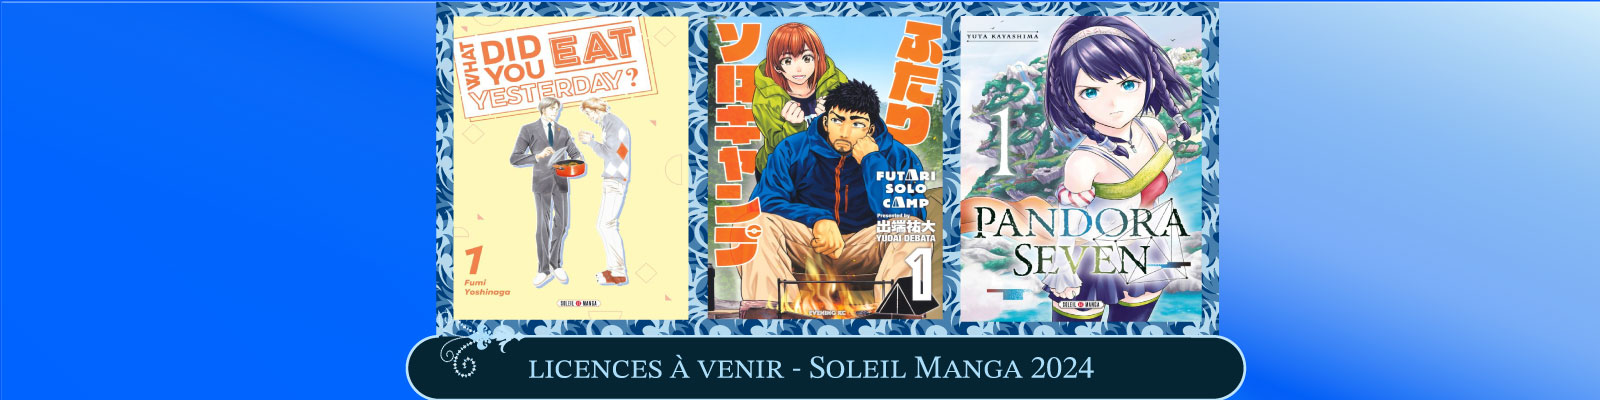 Les-licences-à-venir-chez-Soleil Manga-pour-2024--2